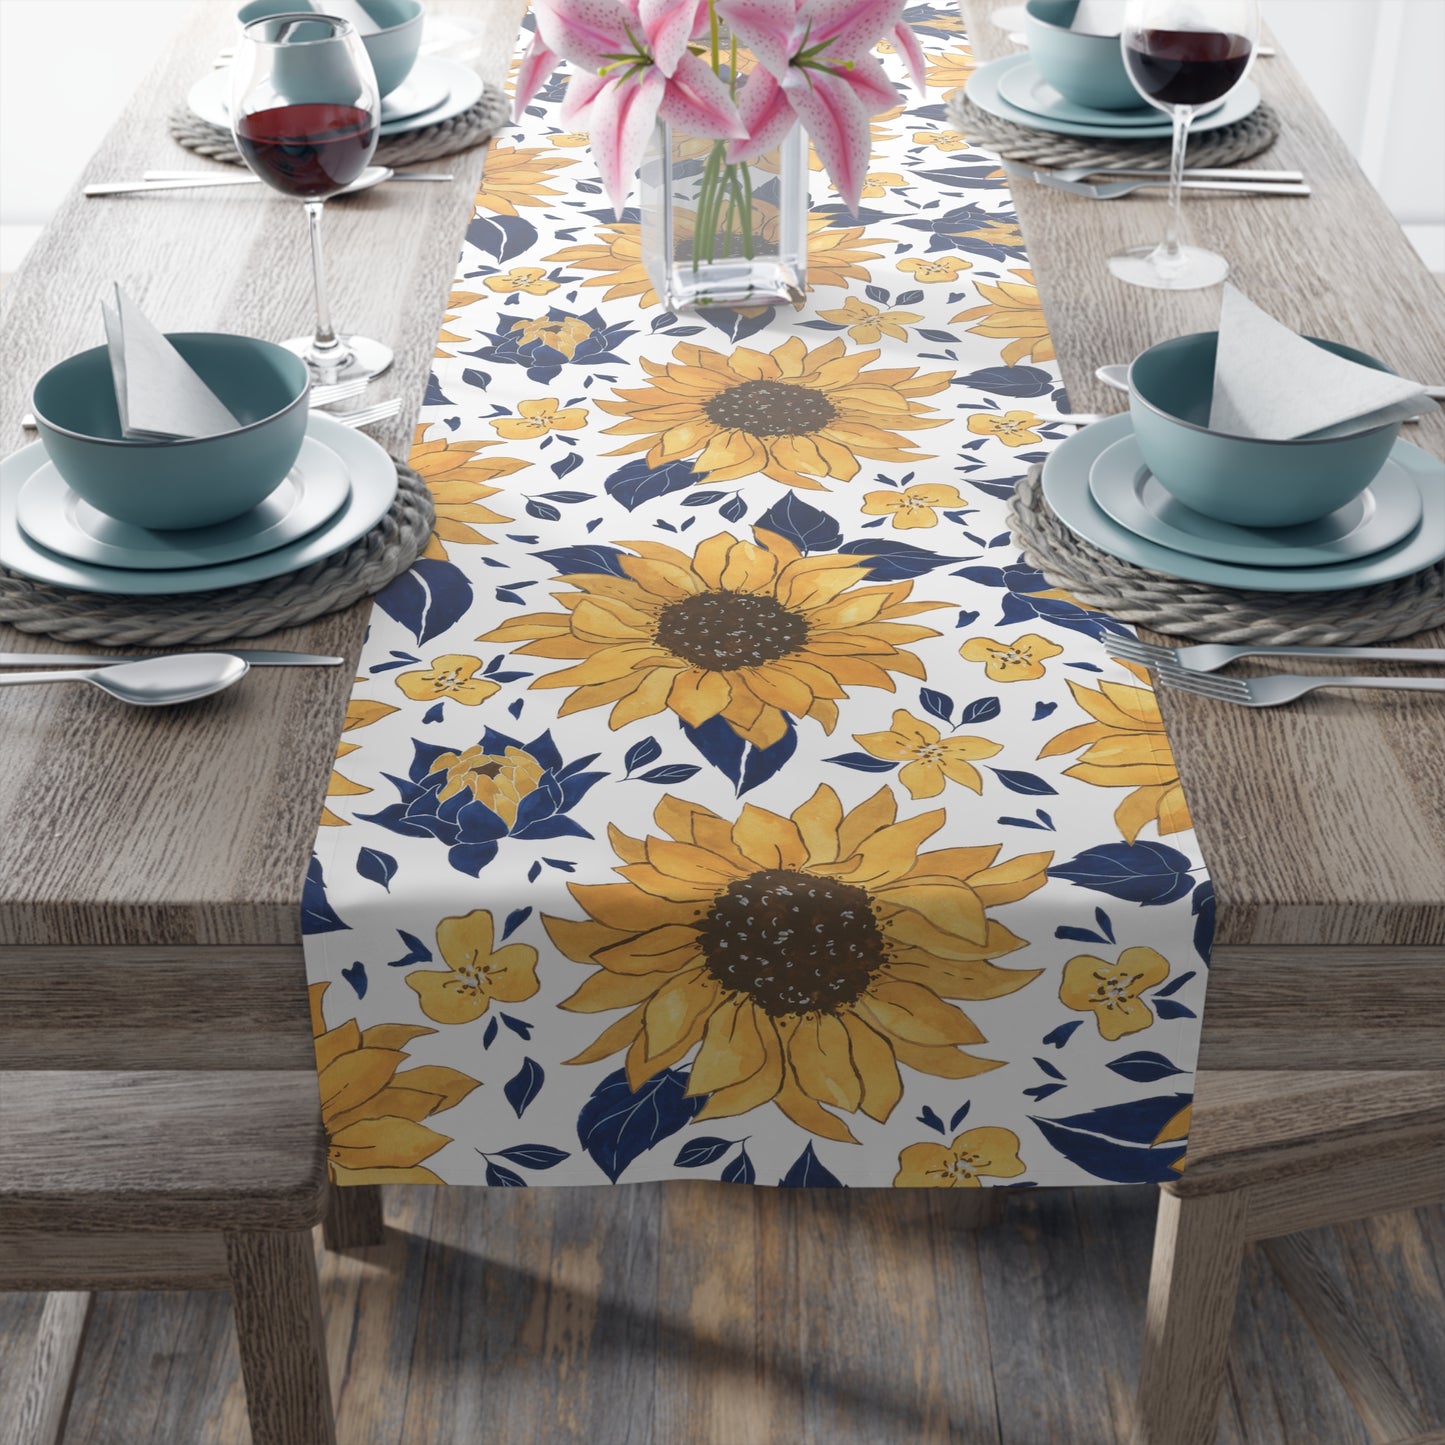 Sunflower Table Runner / Summer Table Decor